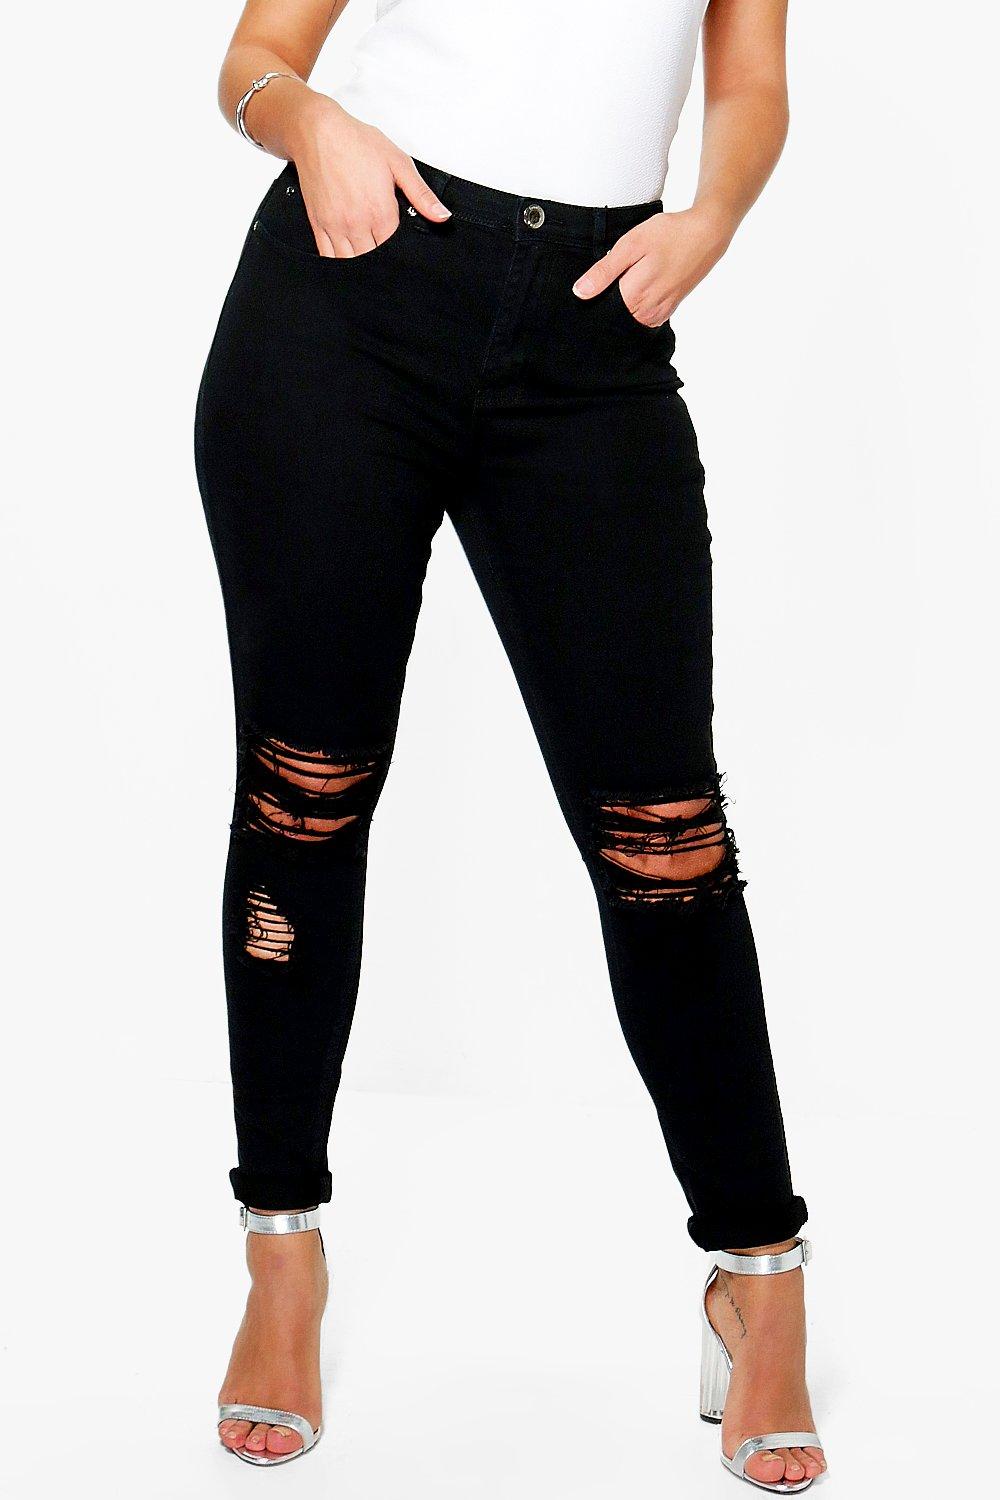 black ripped capri jeans